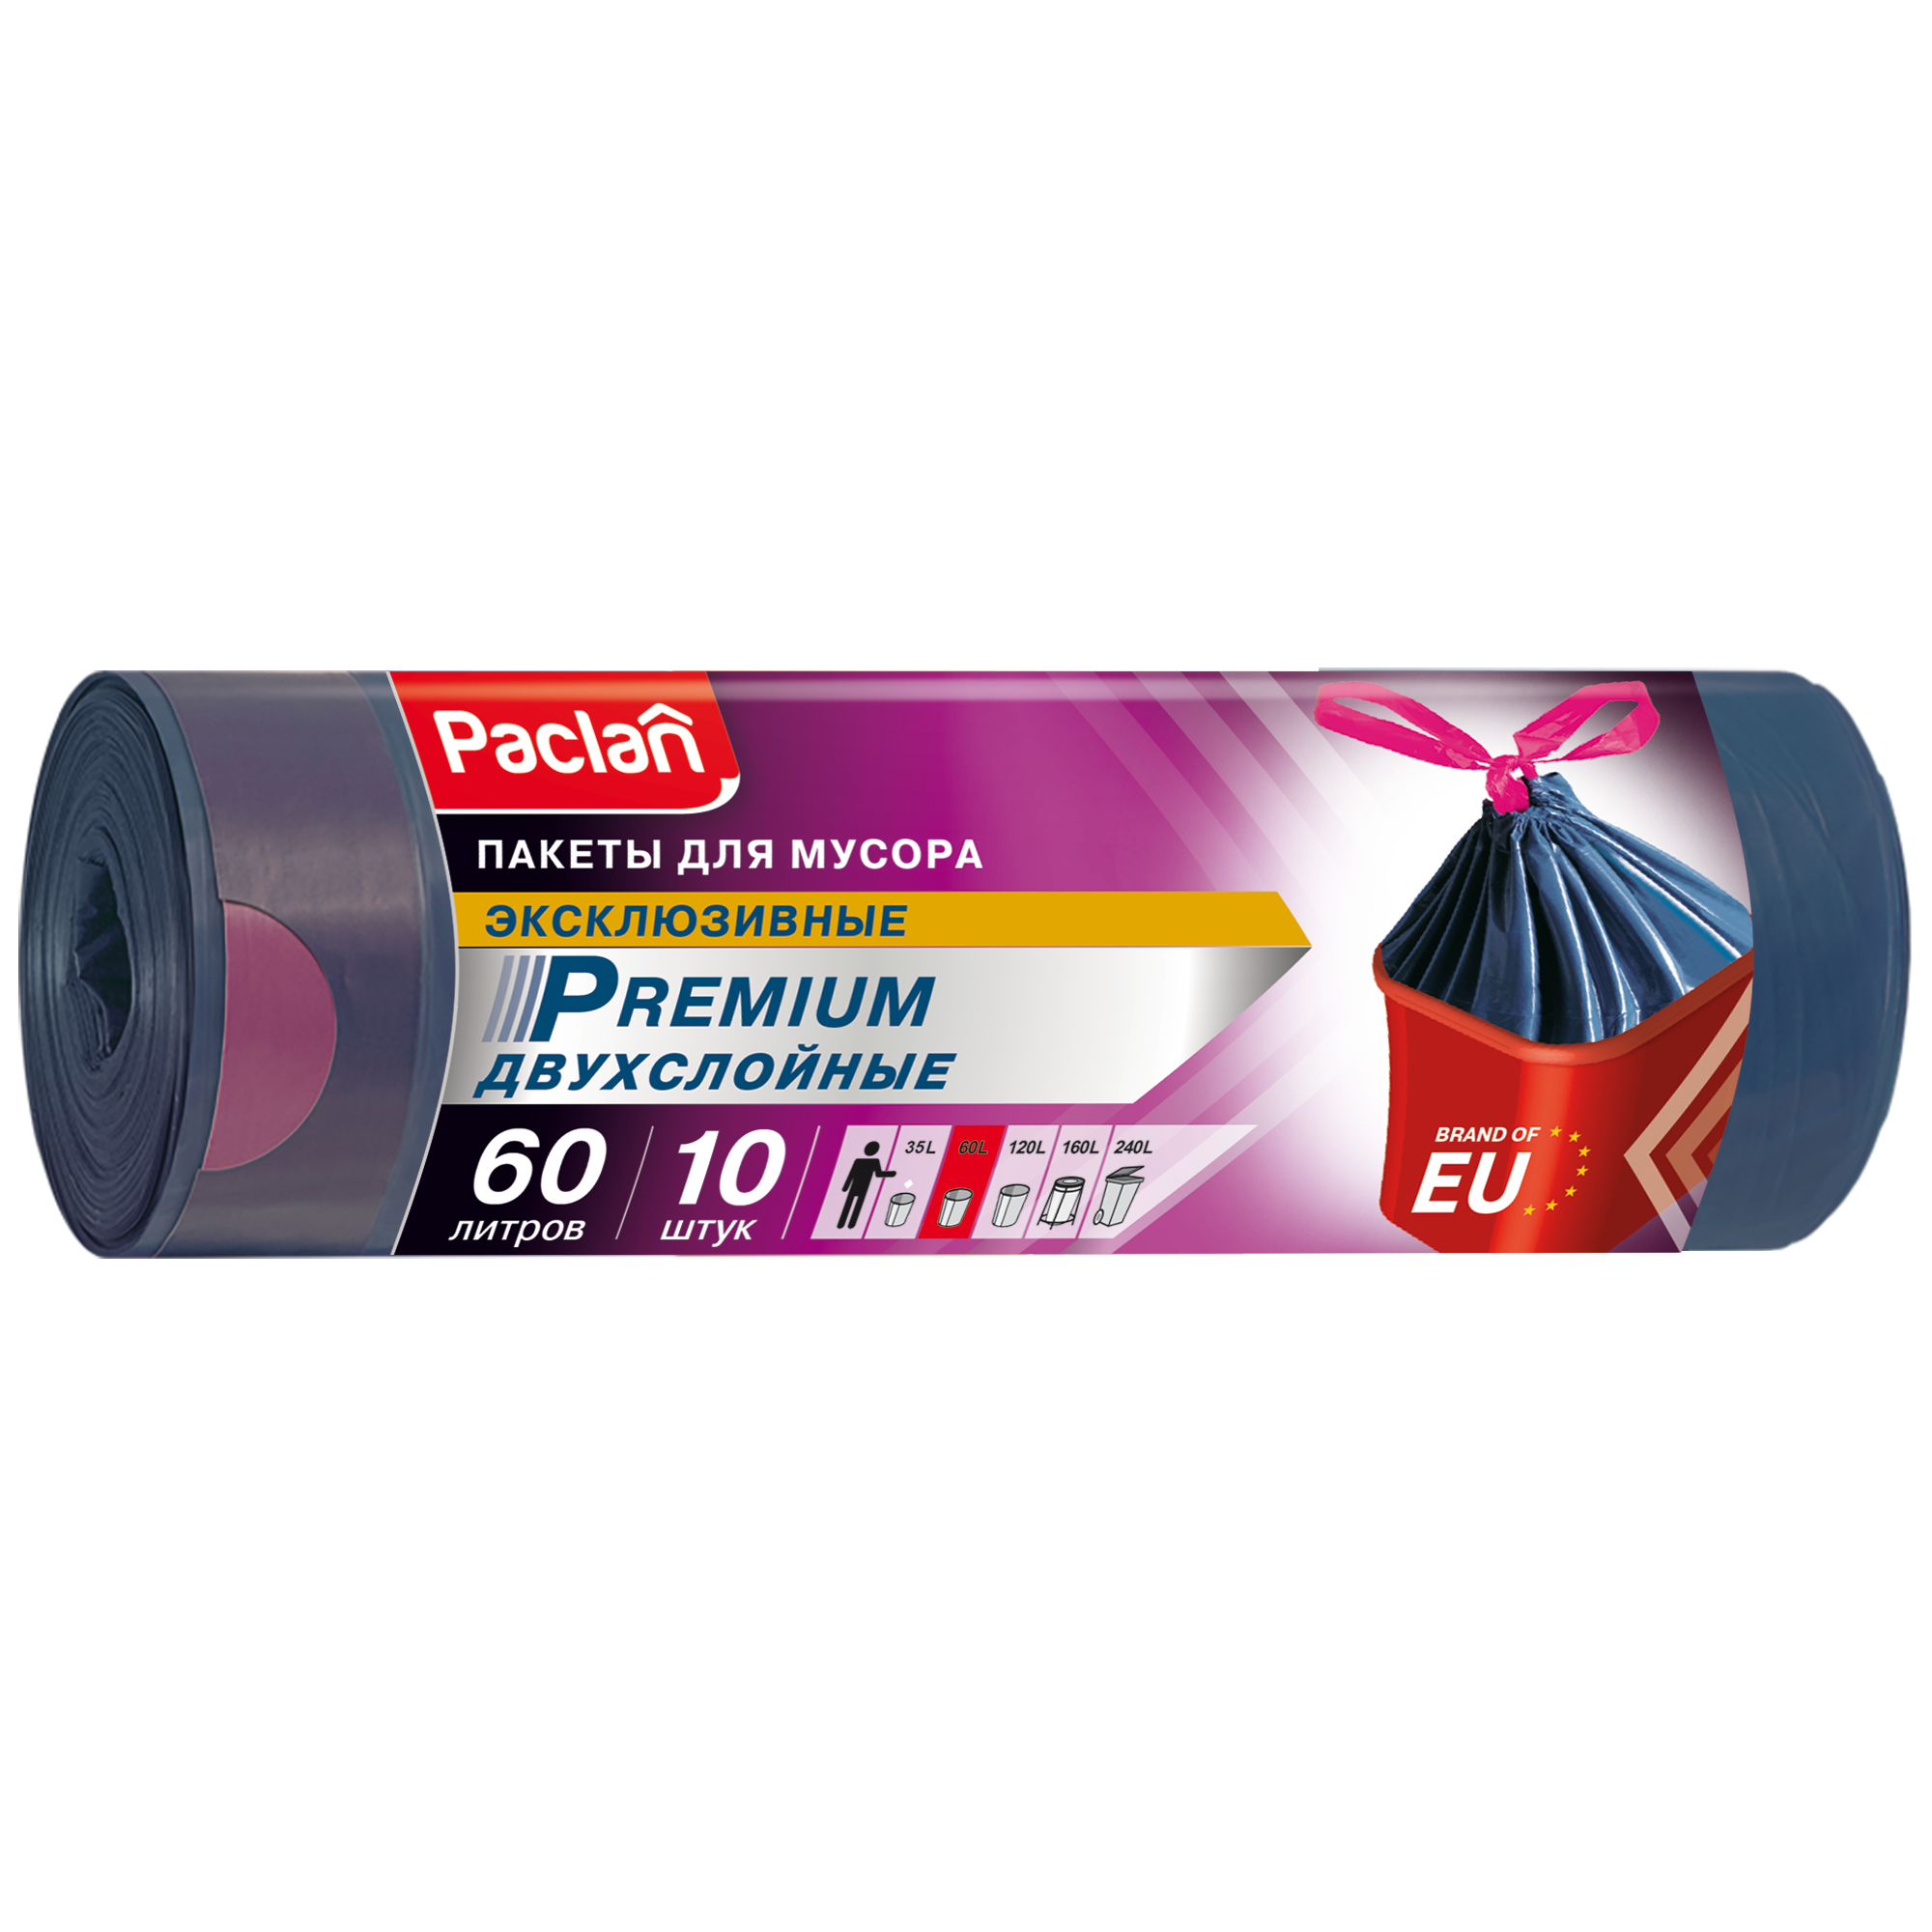 Мешки для мусора Paclan Premium 60 л 10 шт мешки для профессиональных пылесосов 2 шт 36 л gigant star bh 30 2 россия